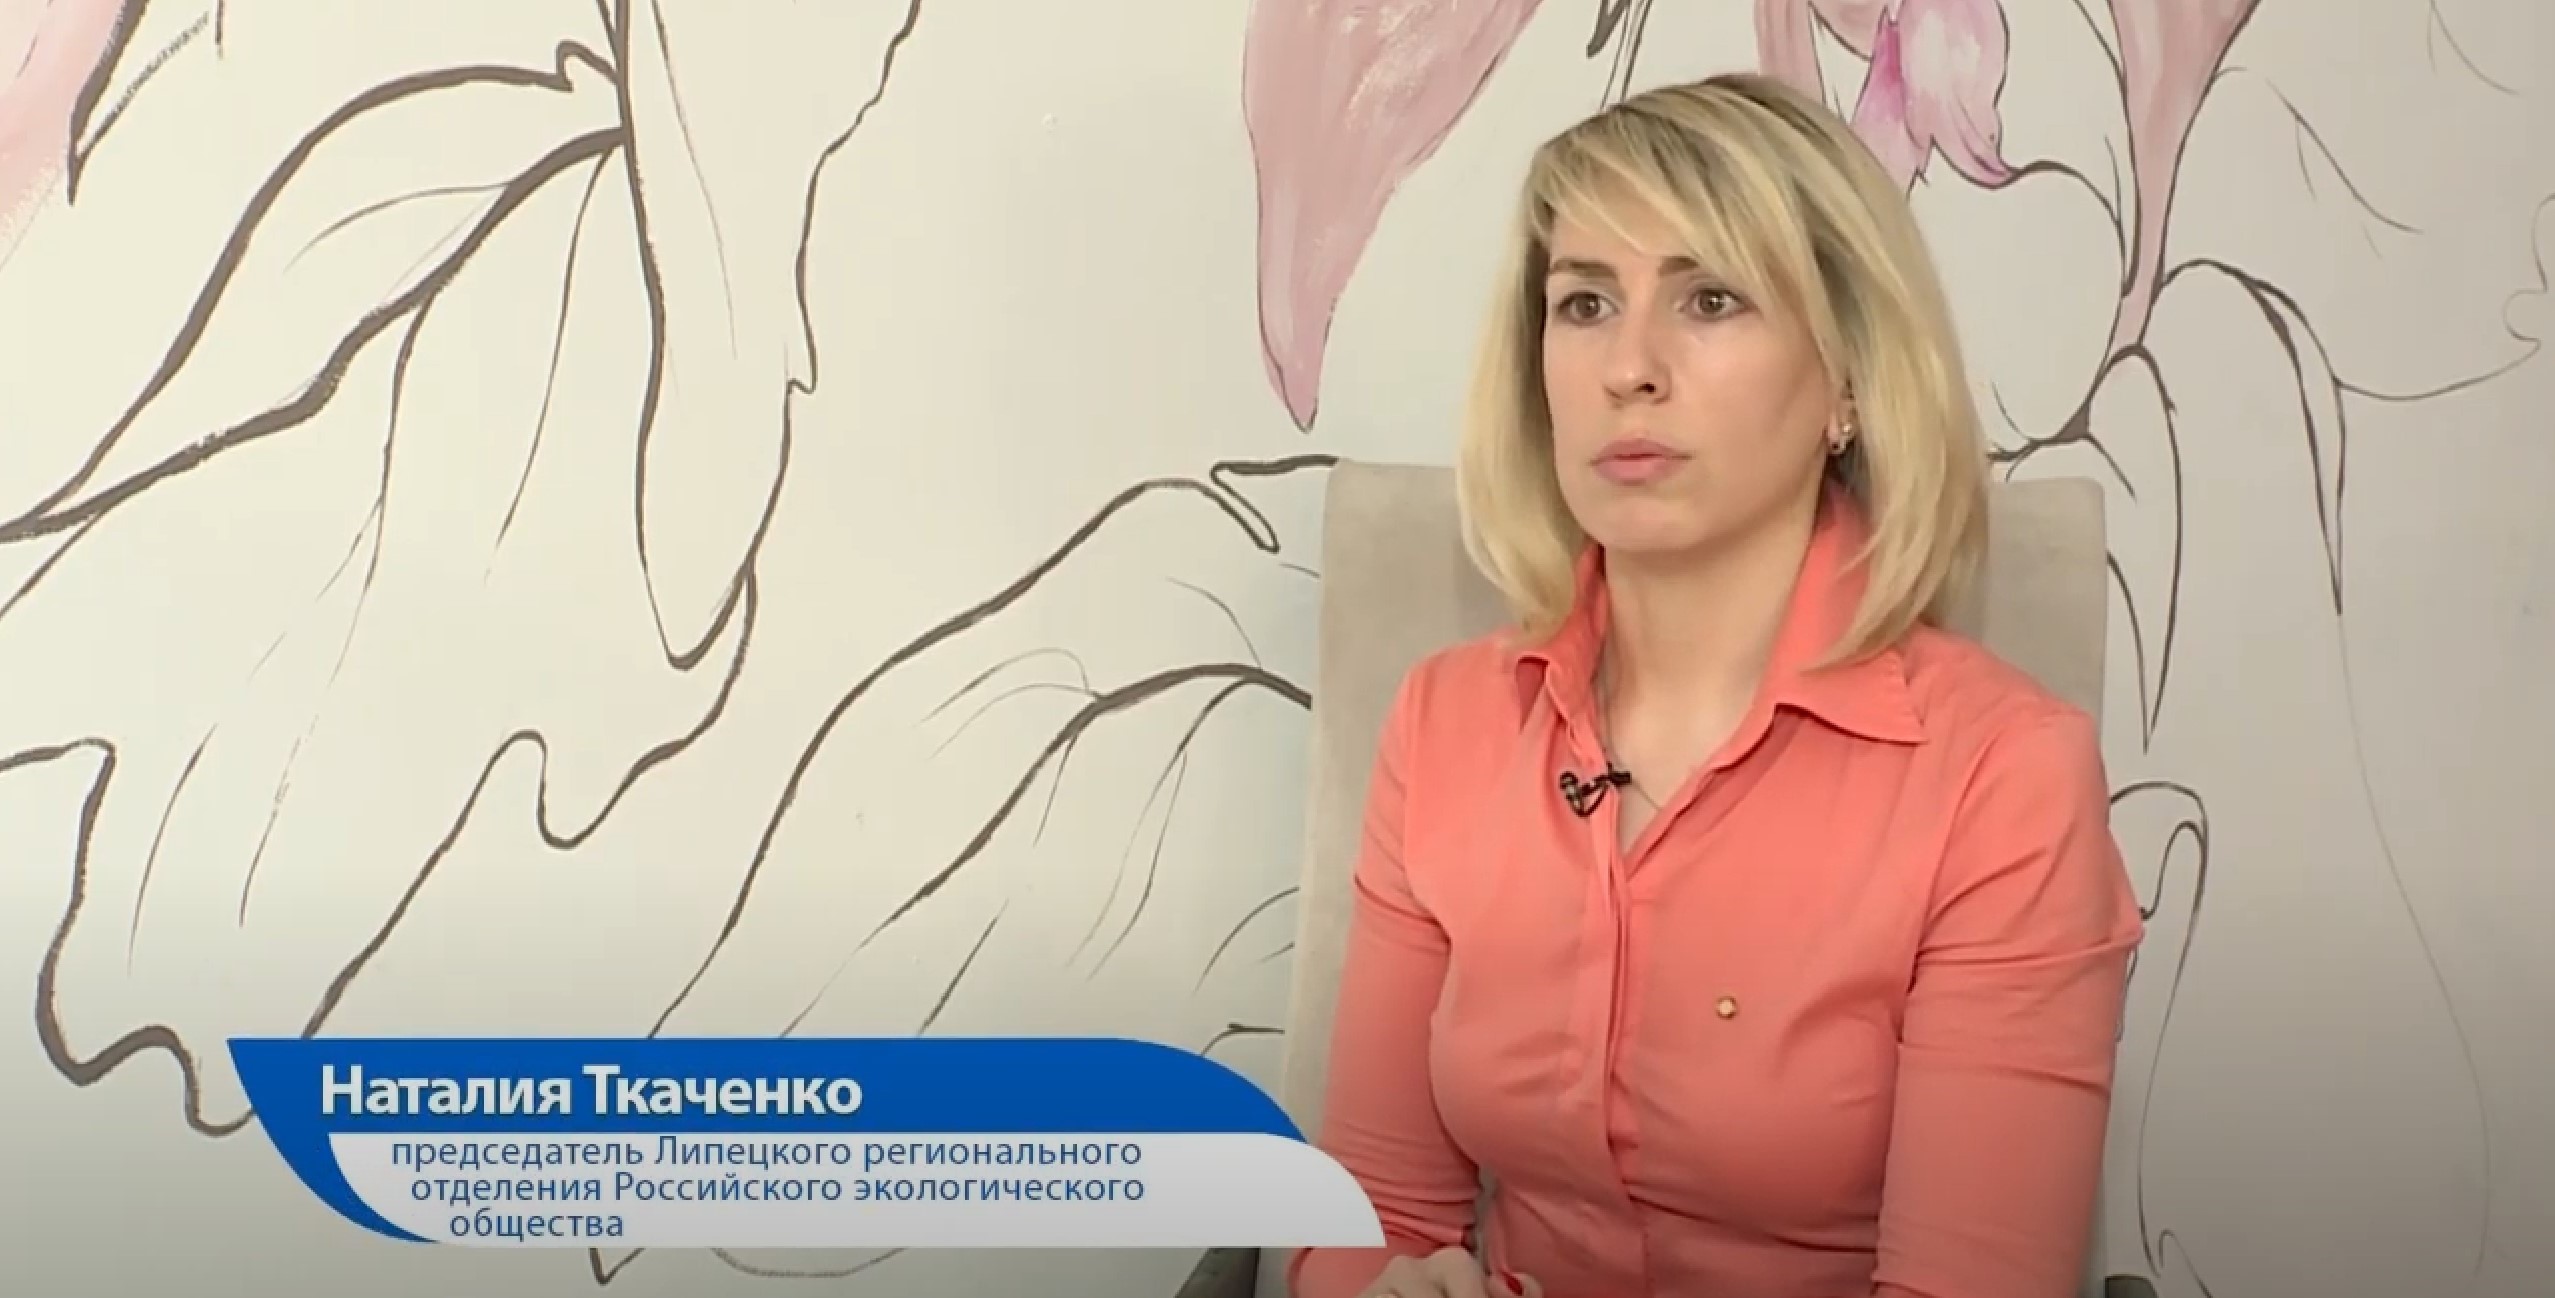 Наталия Ткаченко приняла участие в очередном выпуске телепрограммы «ЭкоСреда»